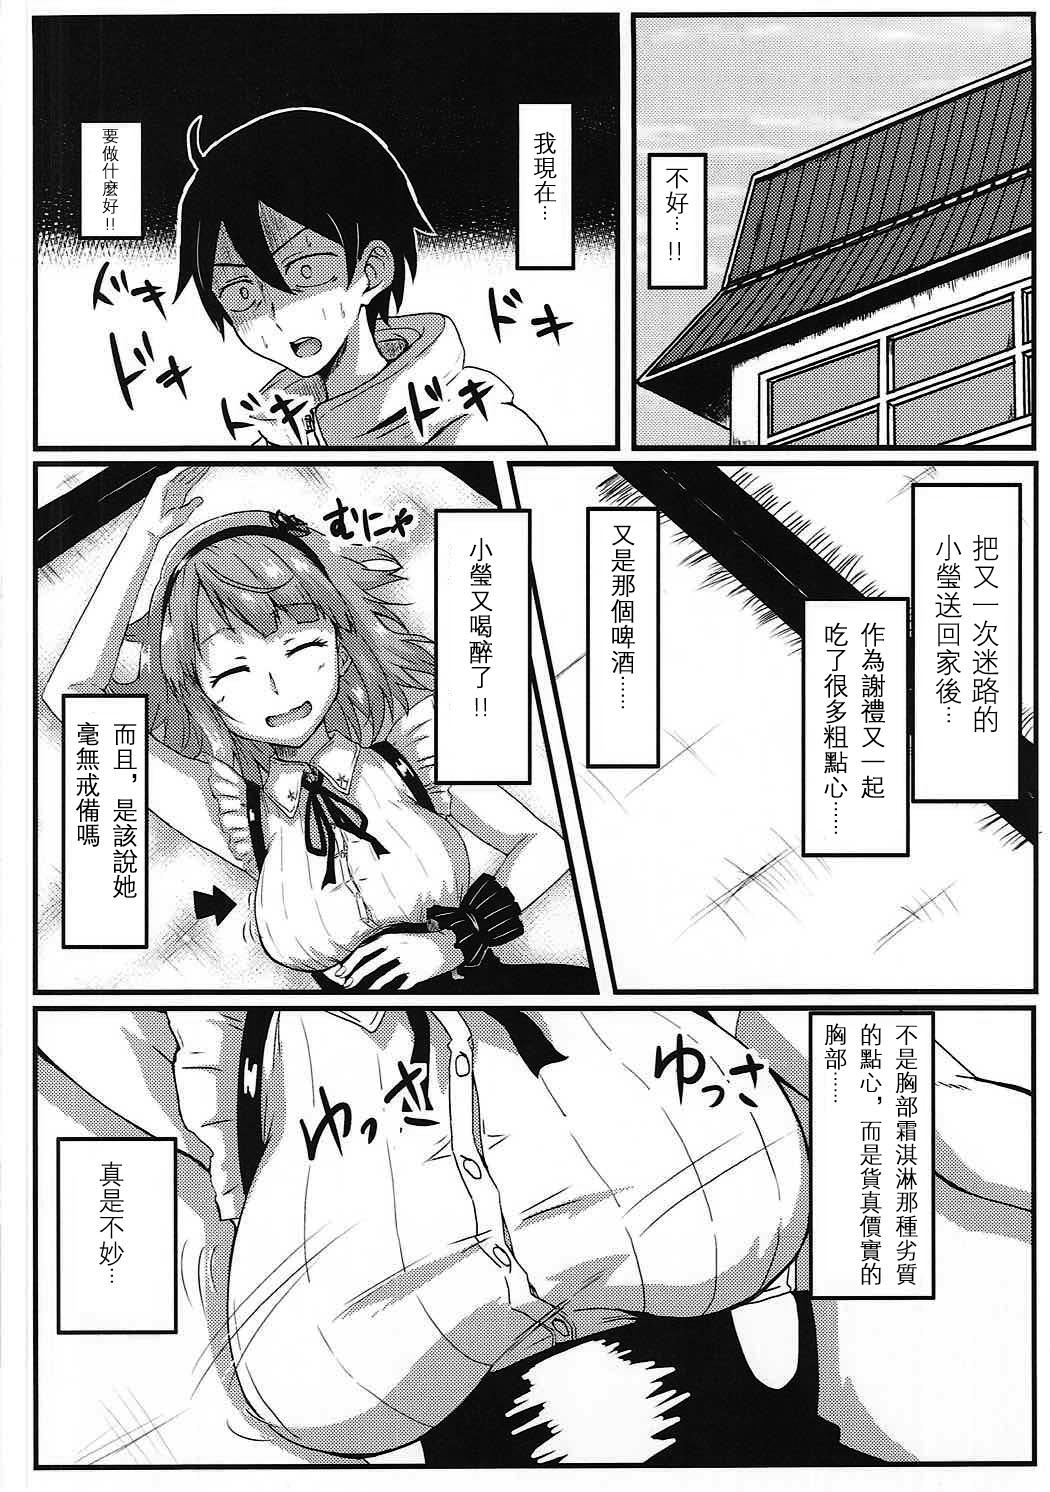 Morena Hotaru-san wa Dagashi no Kaori? - Dagashi kashi Cam Girl - Page 4